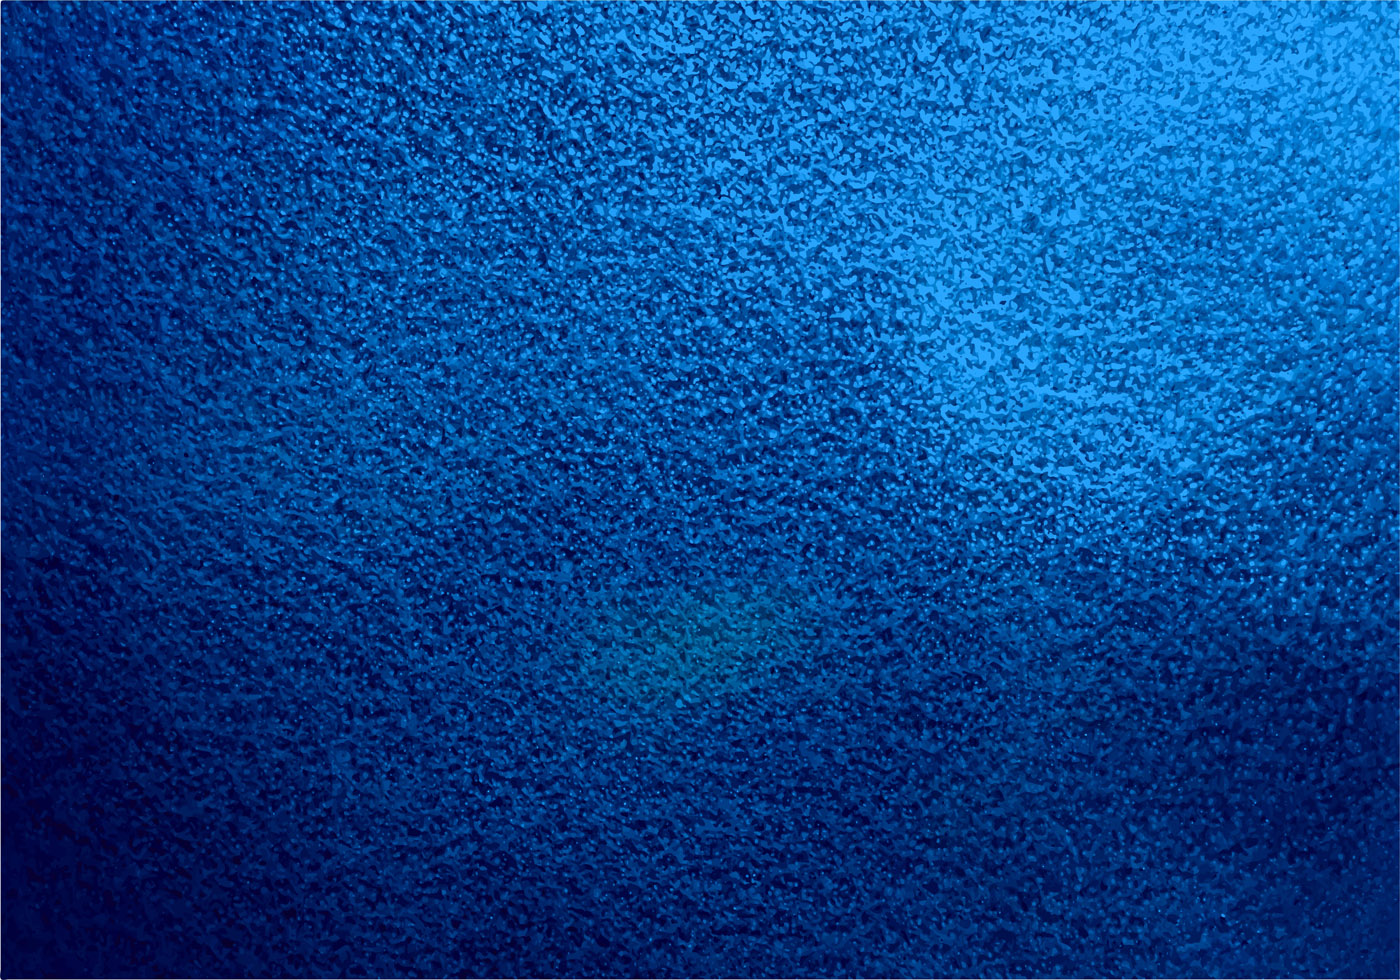 Vector hình nền có vân xanh dương có thể tạo ra một ảnh hưởng đáng kinh ngạc đối với không gian sống của bạn. Được thiết kế với nhiều chi tiết tinh tế, những hình nền này sẽ từng bước giúp lột tả cá tính và phong cách riêng của bạn.